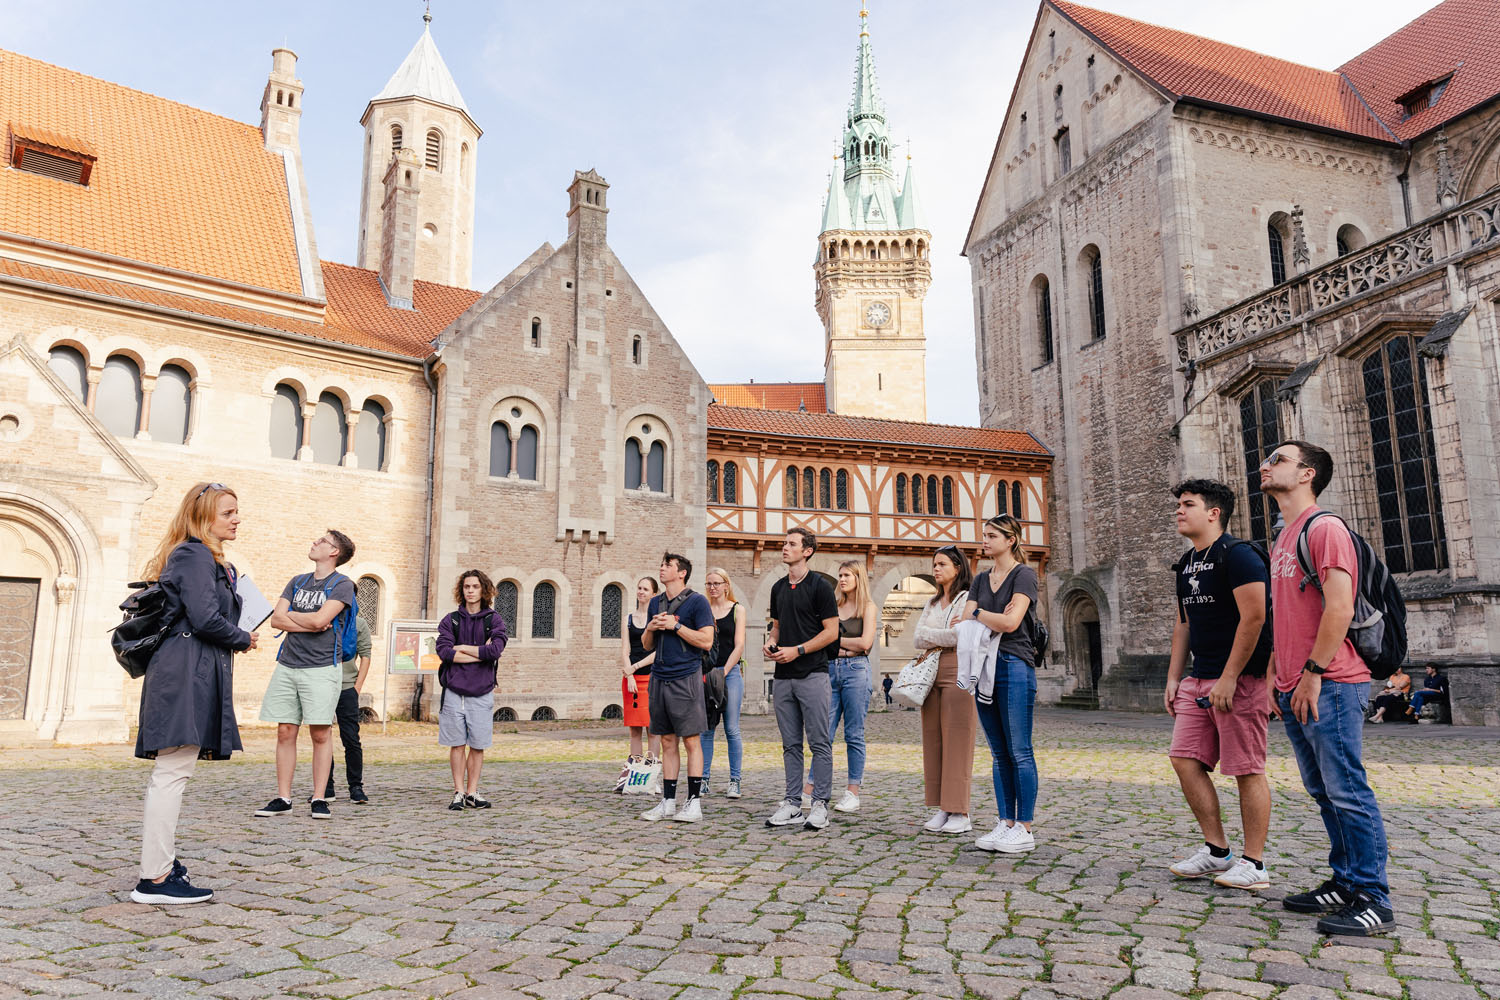  	Studierende bei einer Stadtführung durch das historische Stadtzentrum von Braunschweig